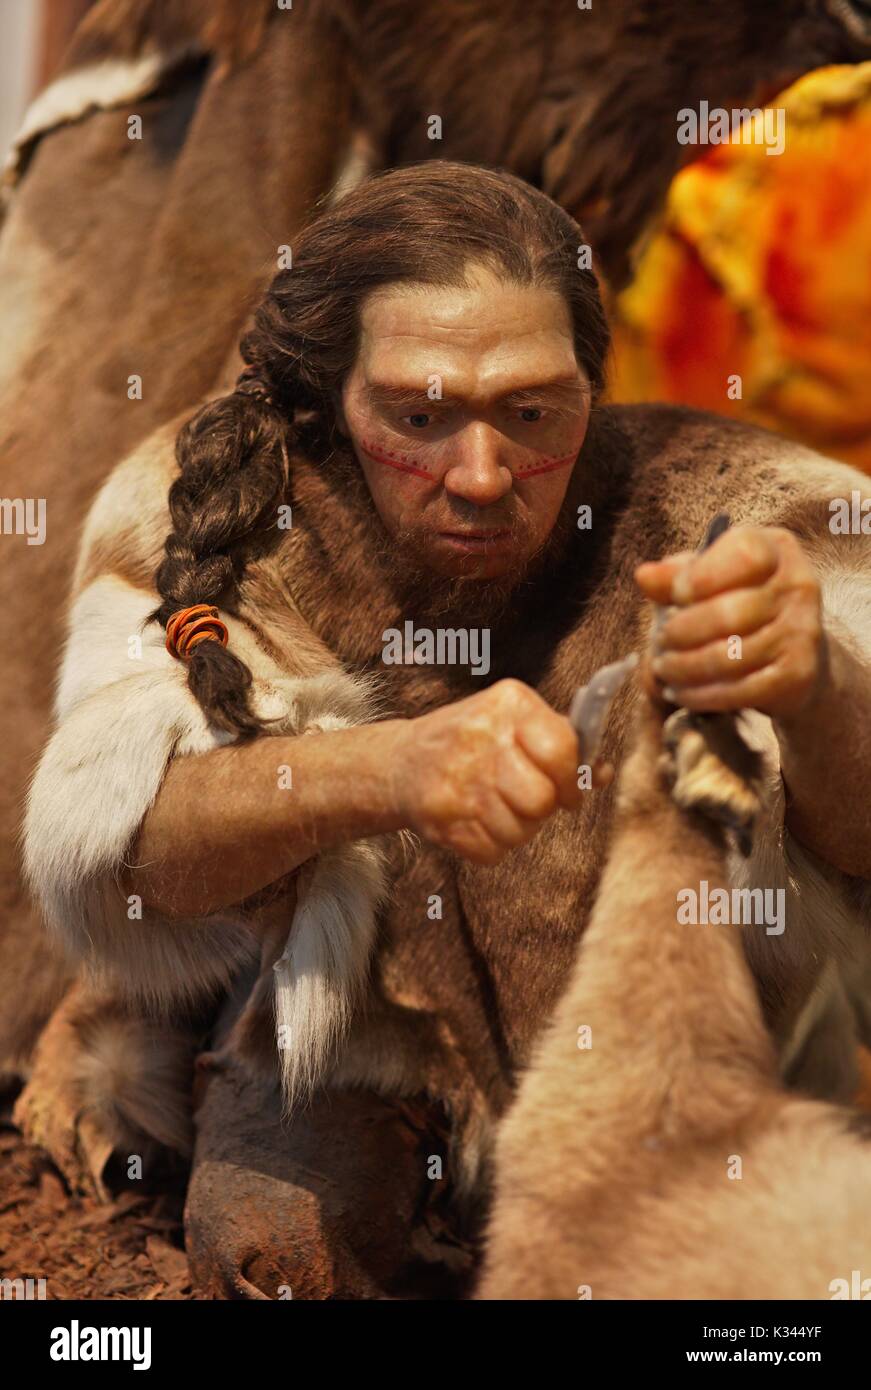 El hombre de Neandertal con pintura facial roja trocear la presa, cortando la pierna con una cuchilla de piedra Foto de stock